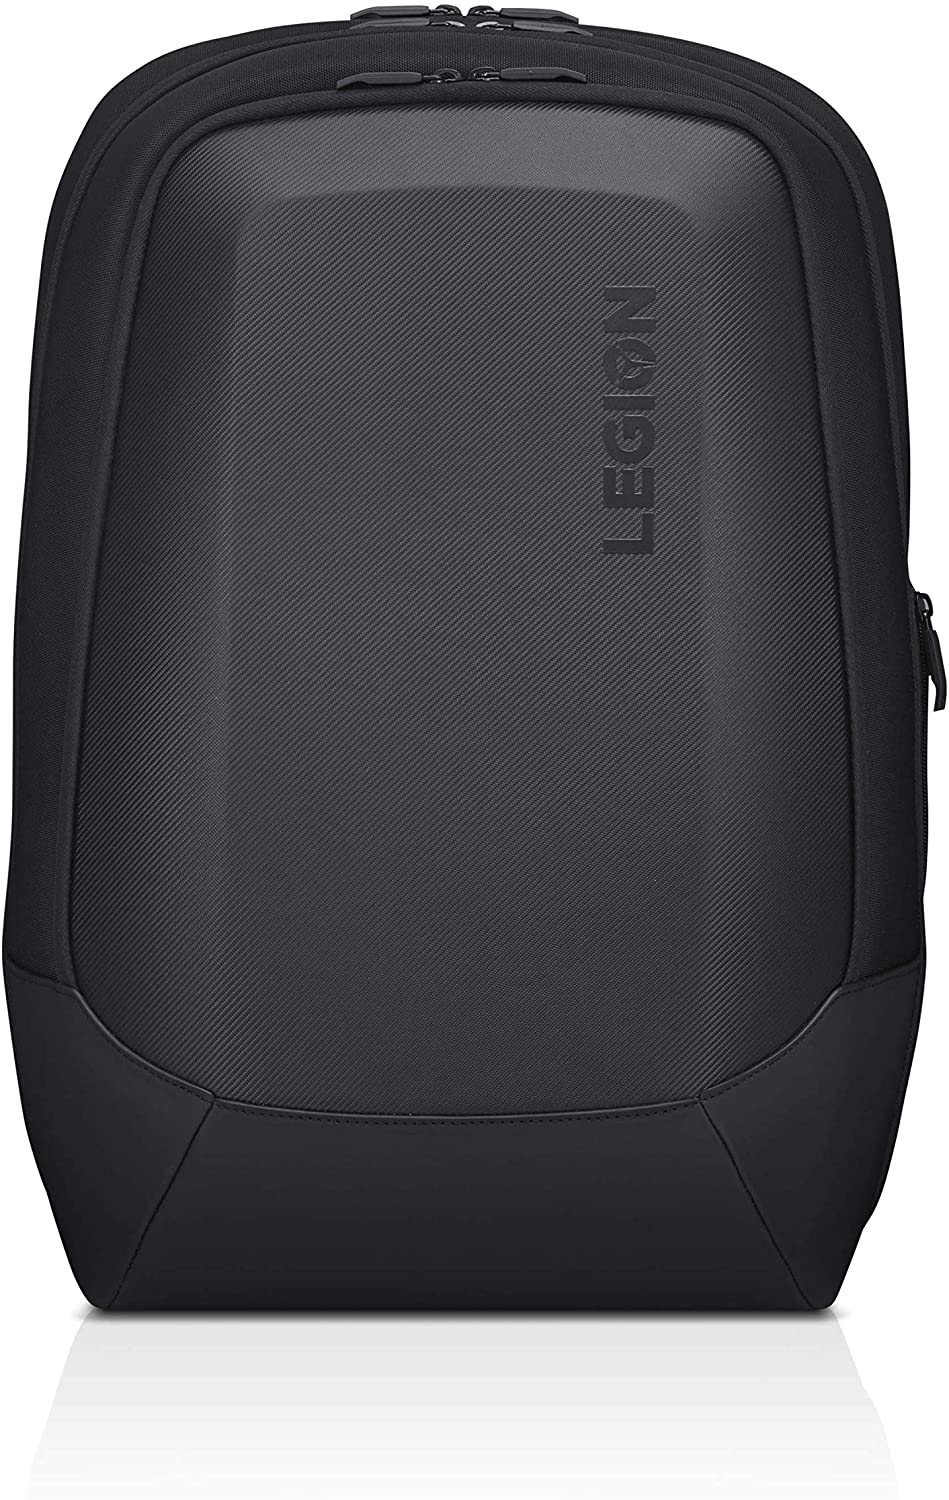 LENOVO LEGION 17" ARMORED BACKPACK II BLACK GX40V10007 | Laptop Backpack